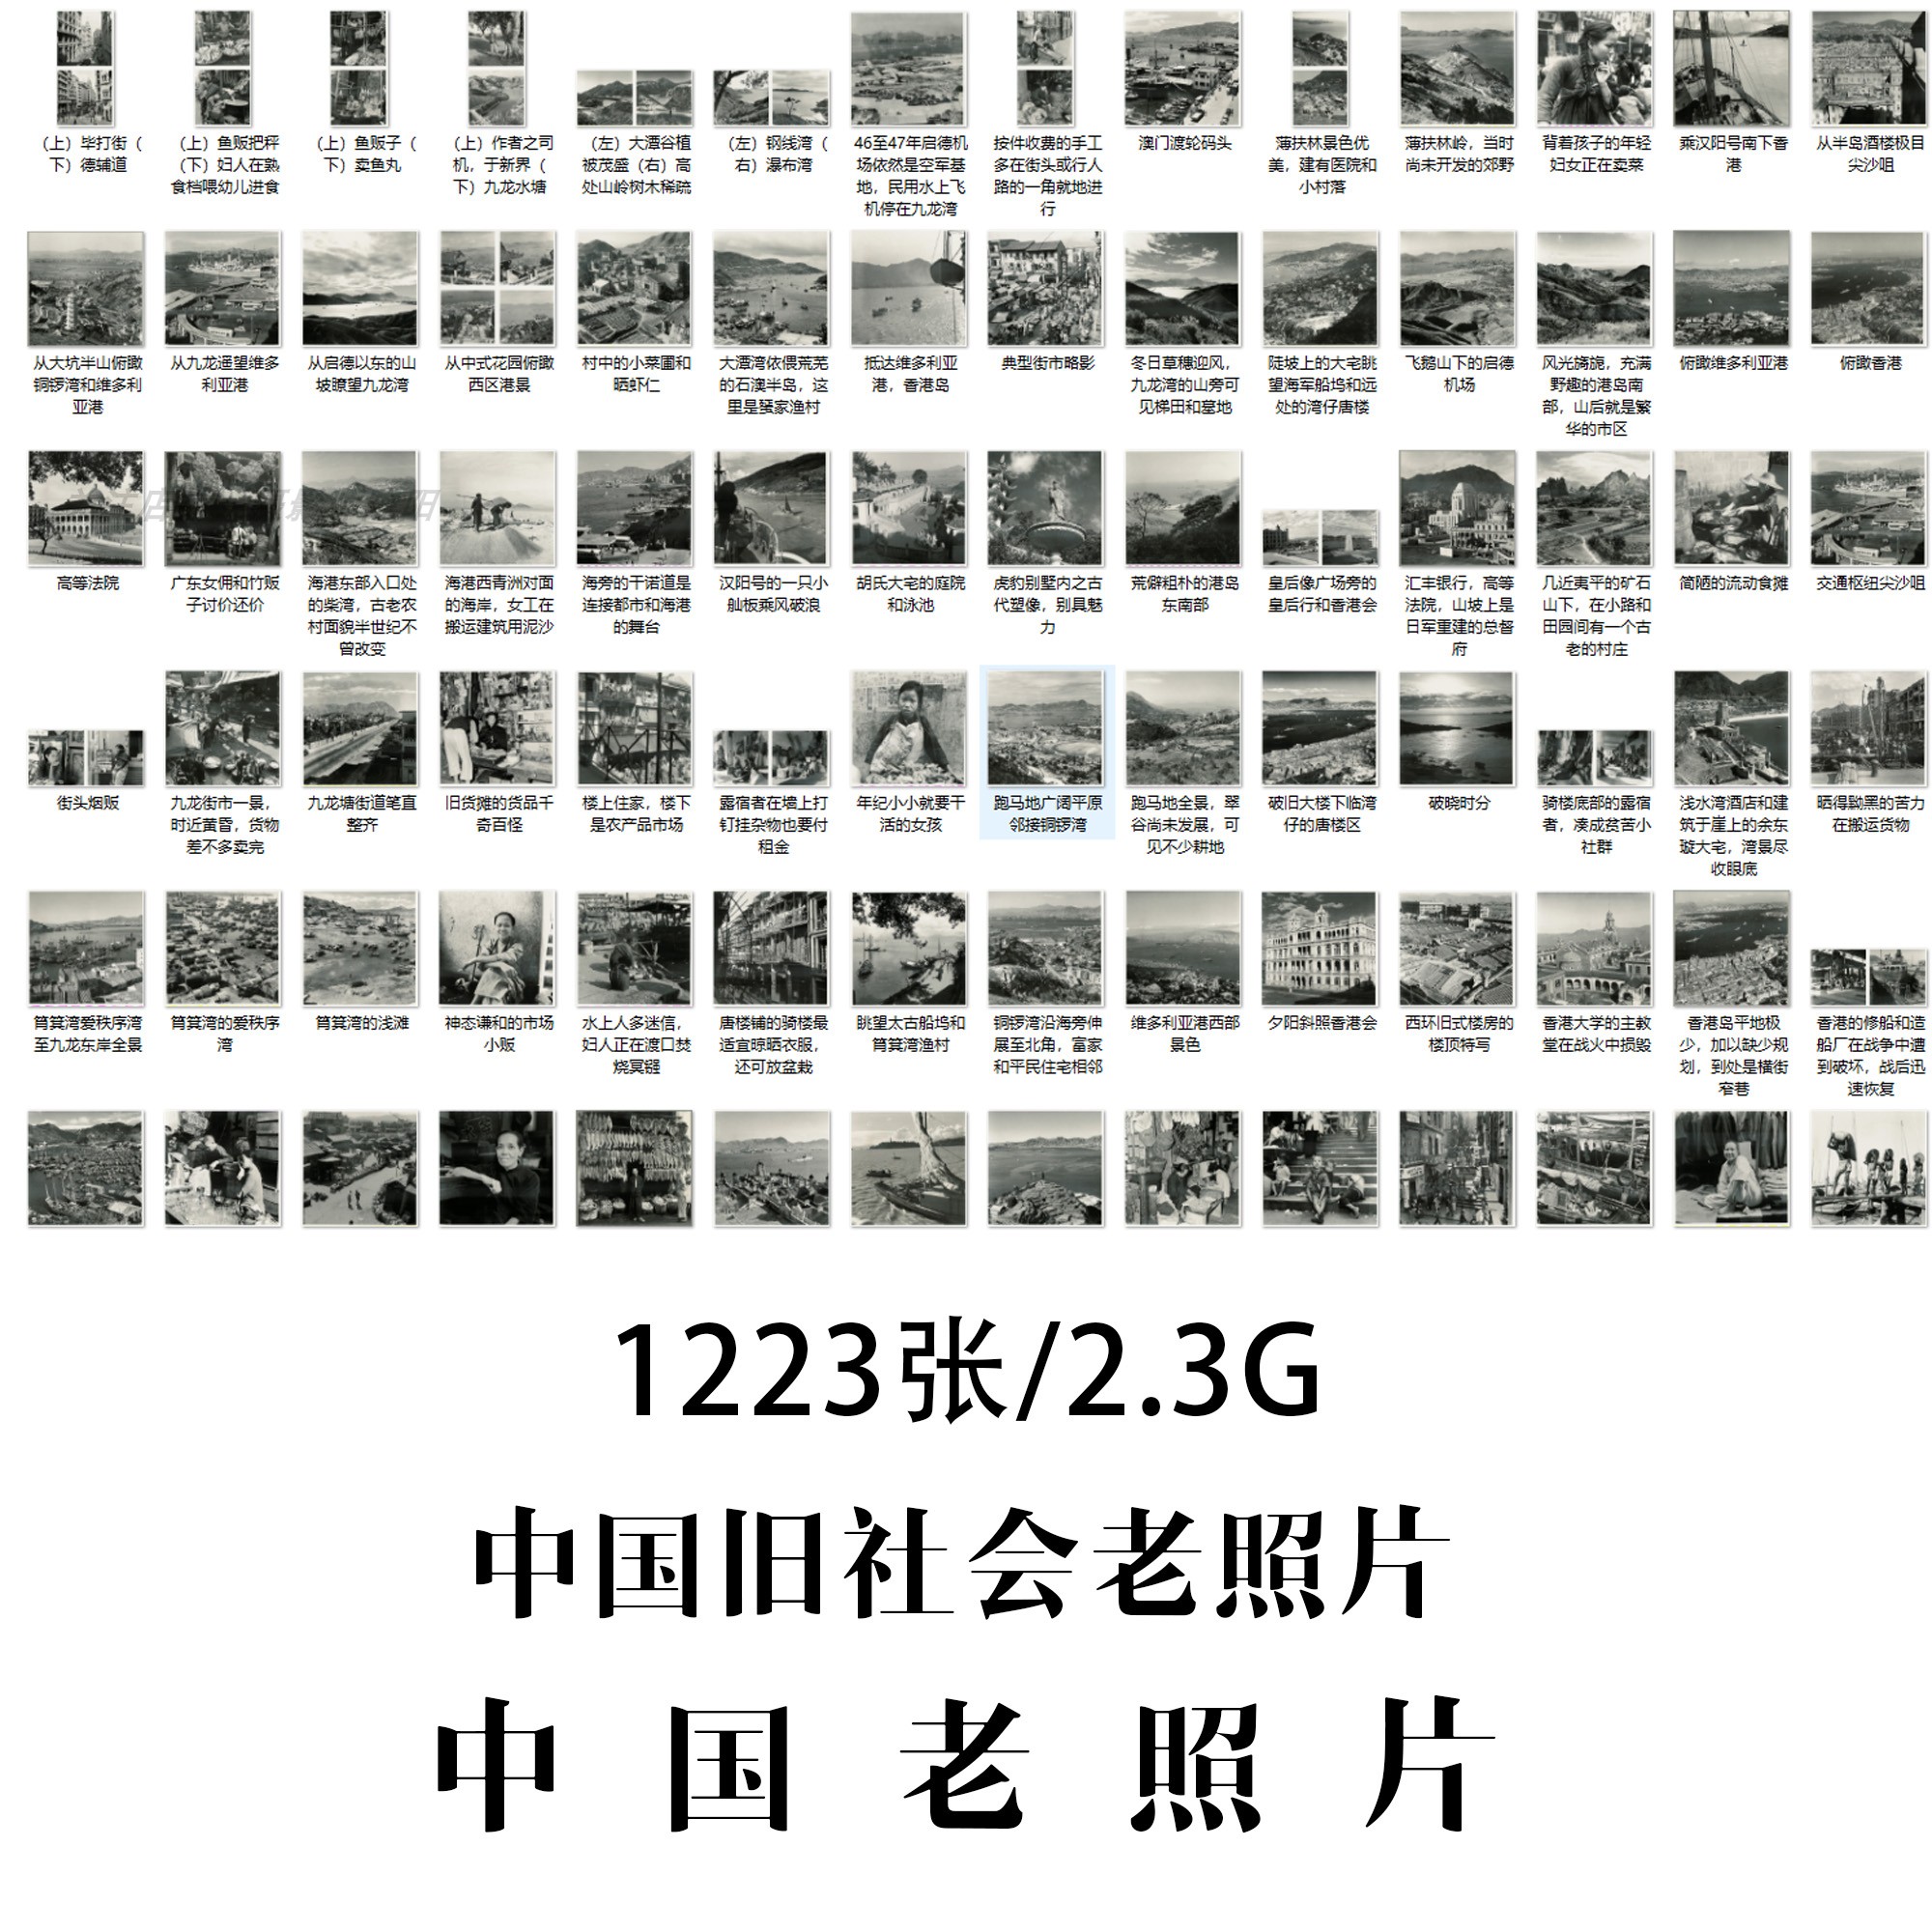 中国老照片中国旧社会老照片合集摄影作品电子图片